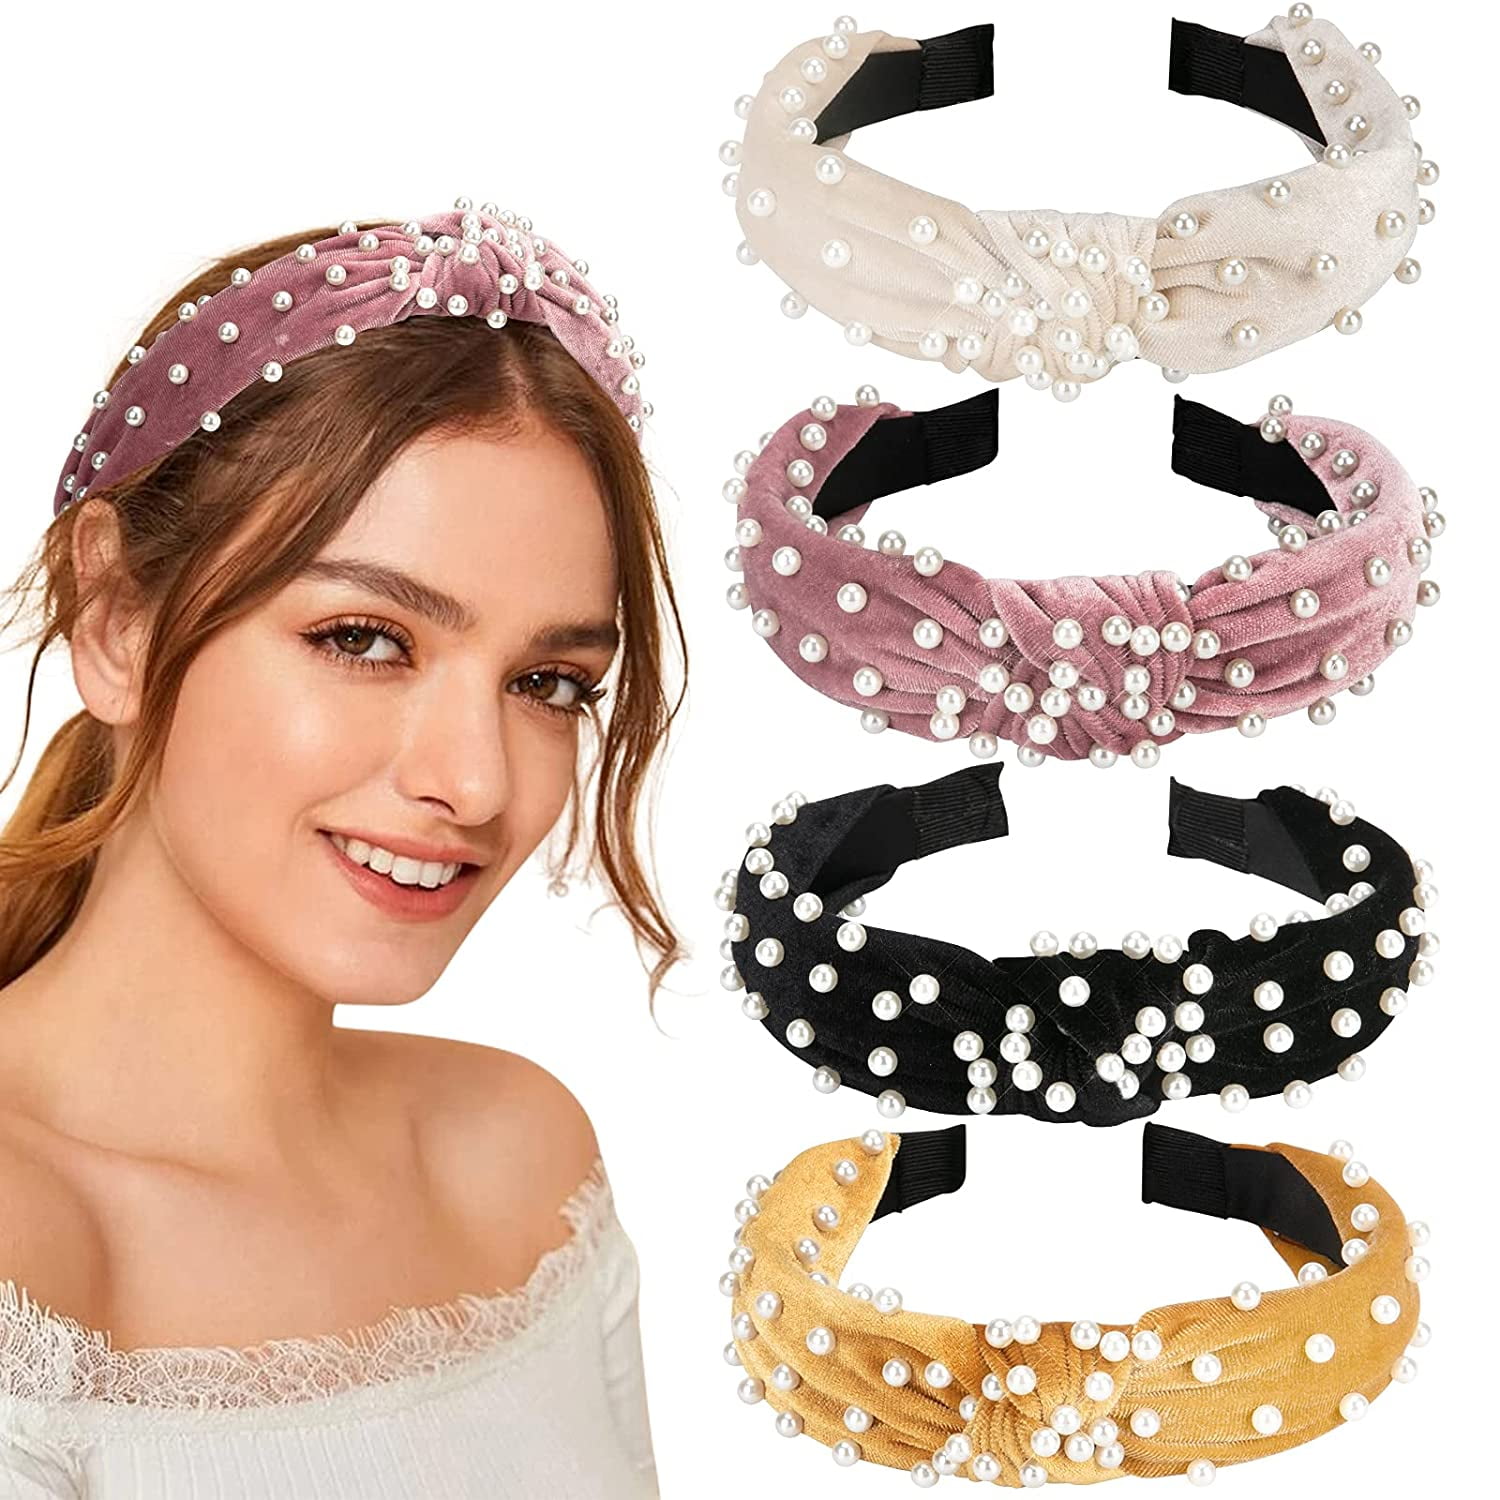 Velvet hairband Нeadband for women Hairband hair accessories